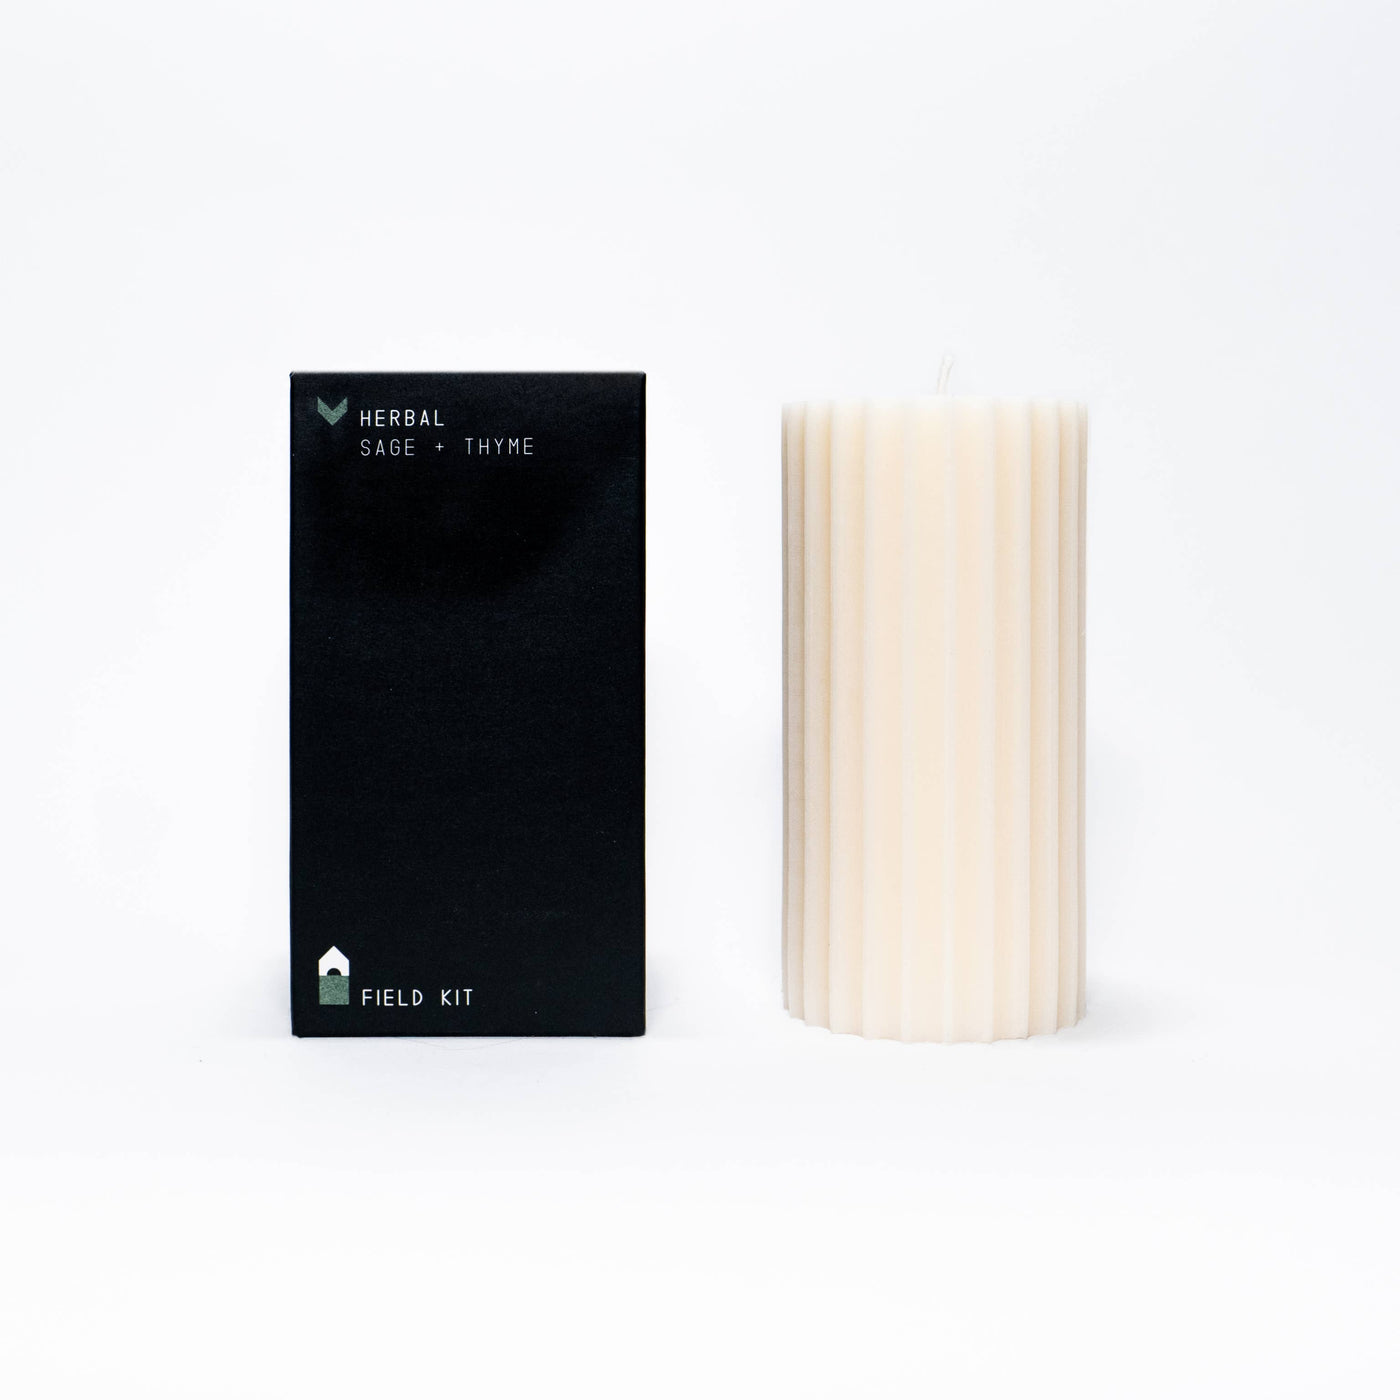 Field Kit - Herbal Pillar Candle: Smoke